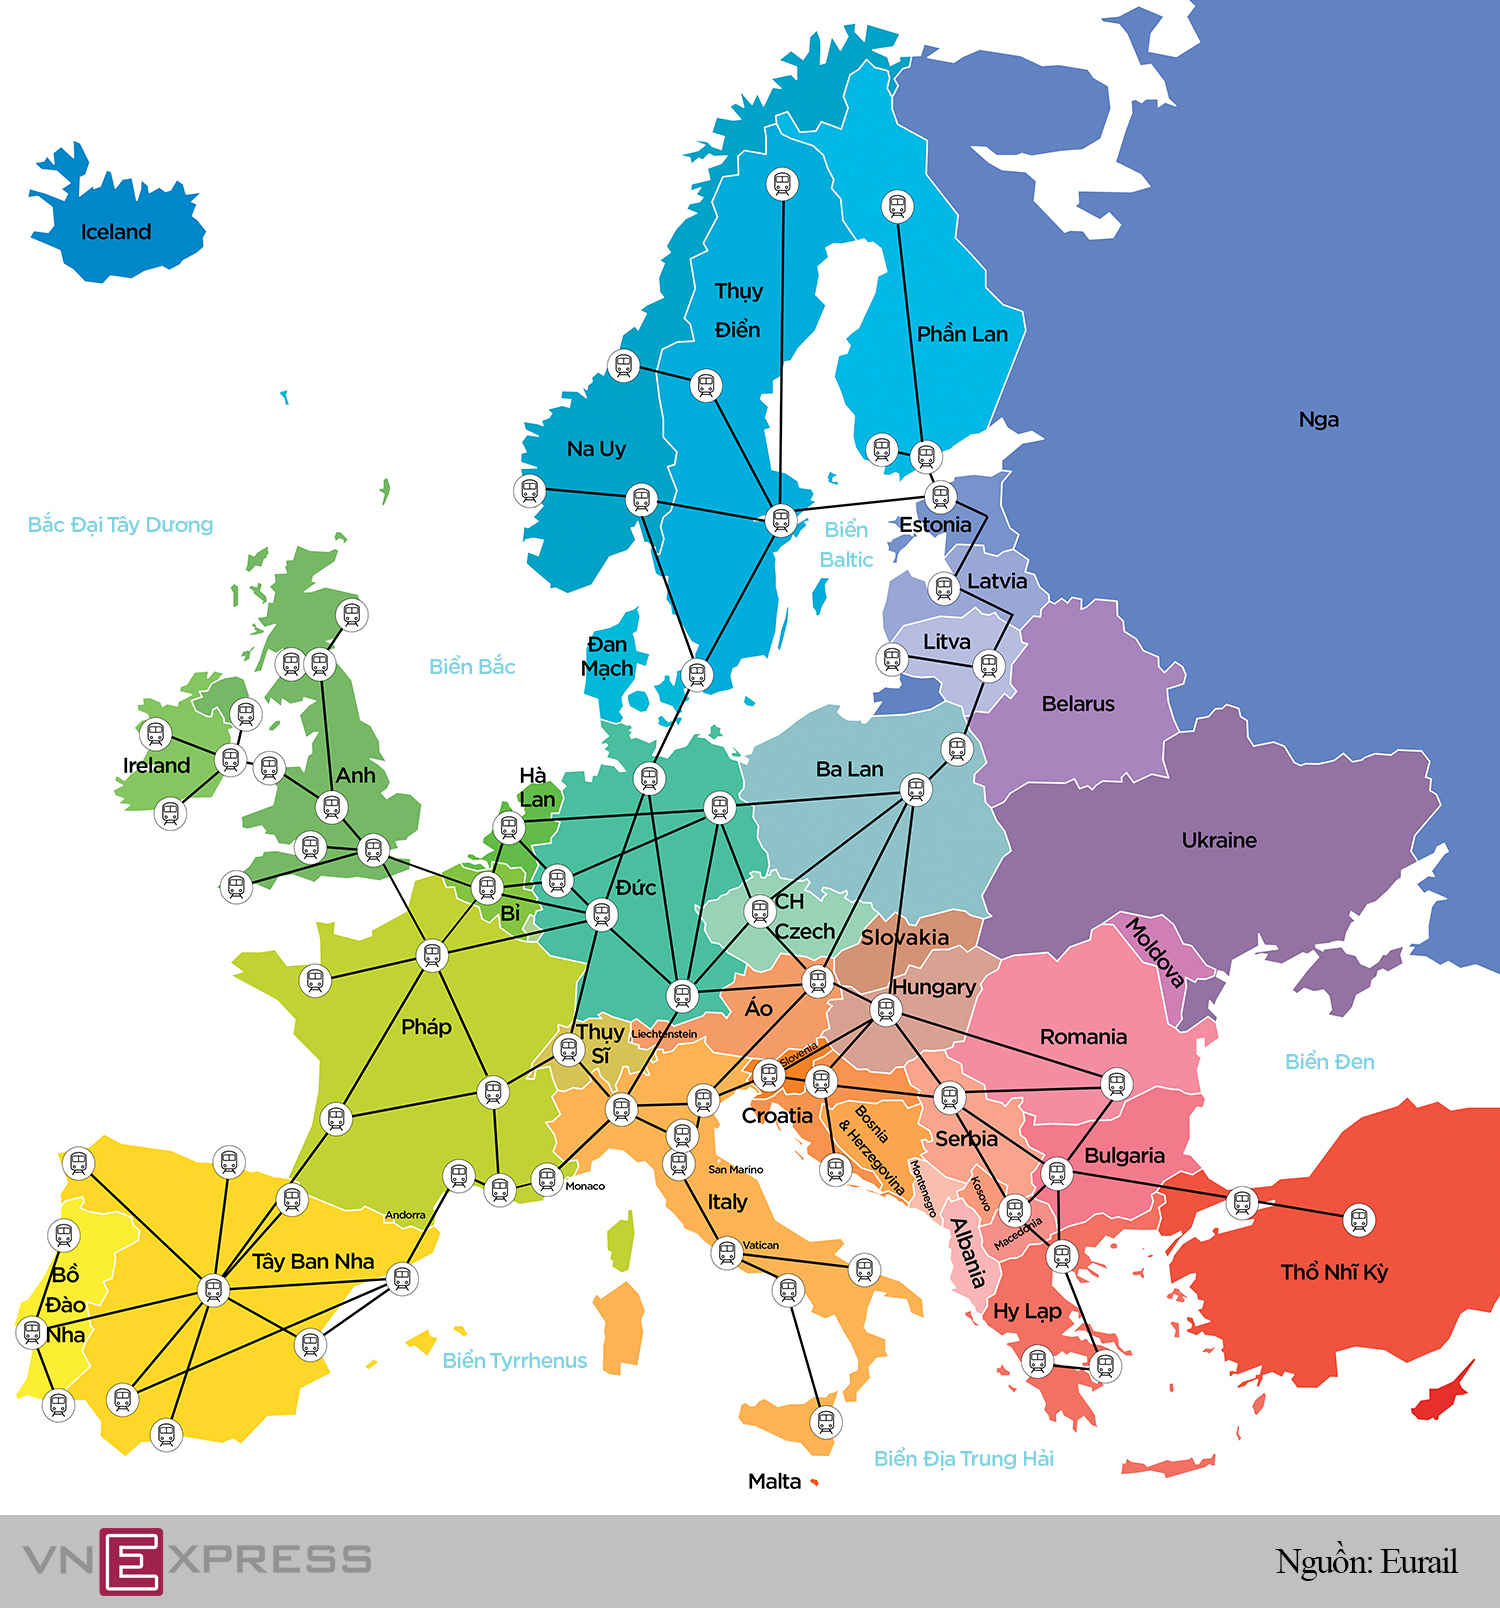 Đường tàu không biên giới ở châu Âu